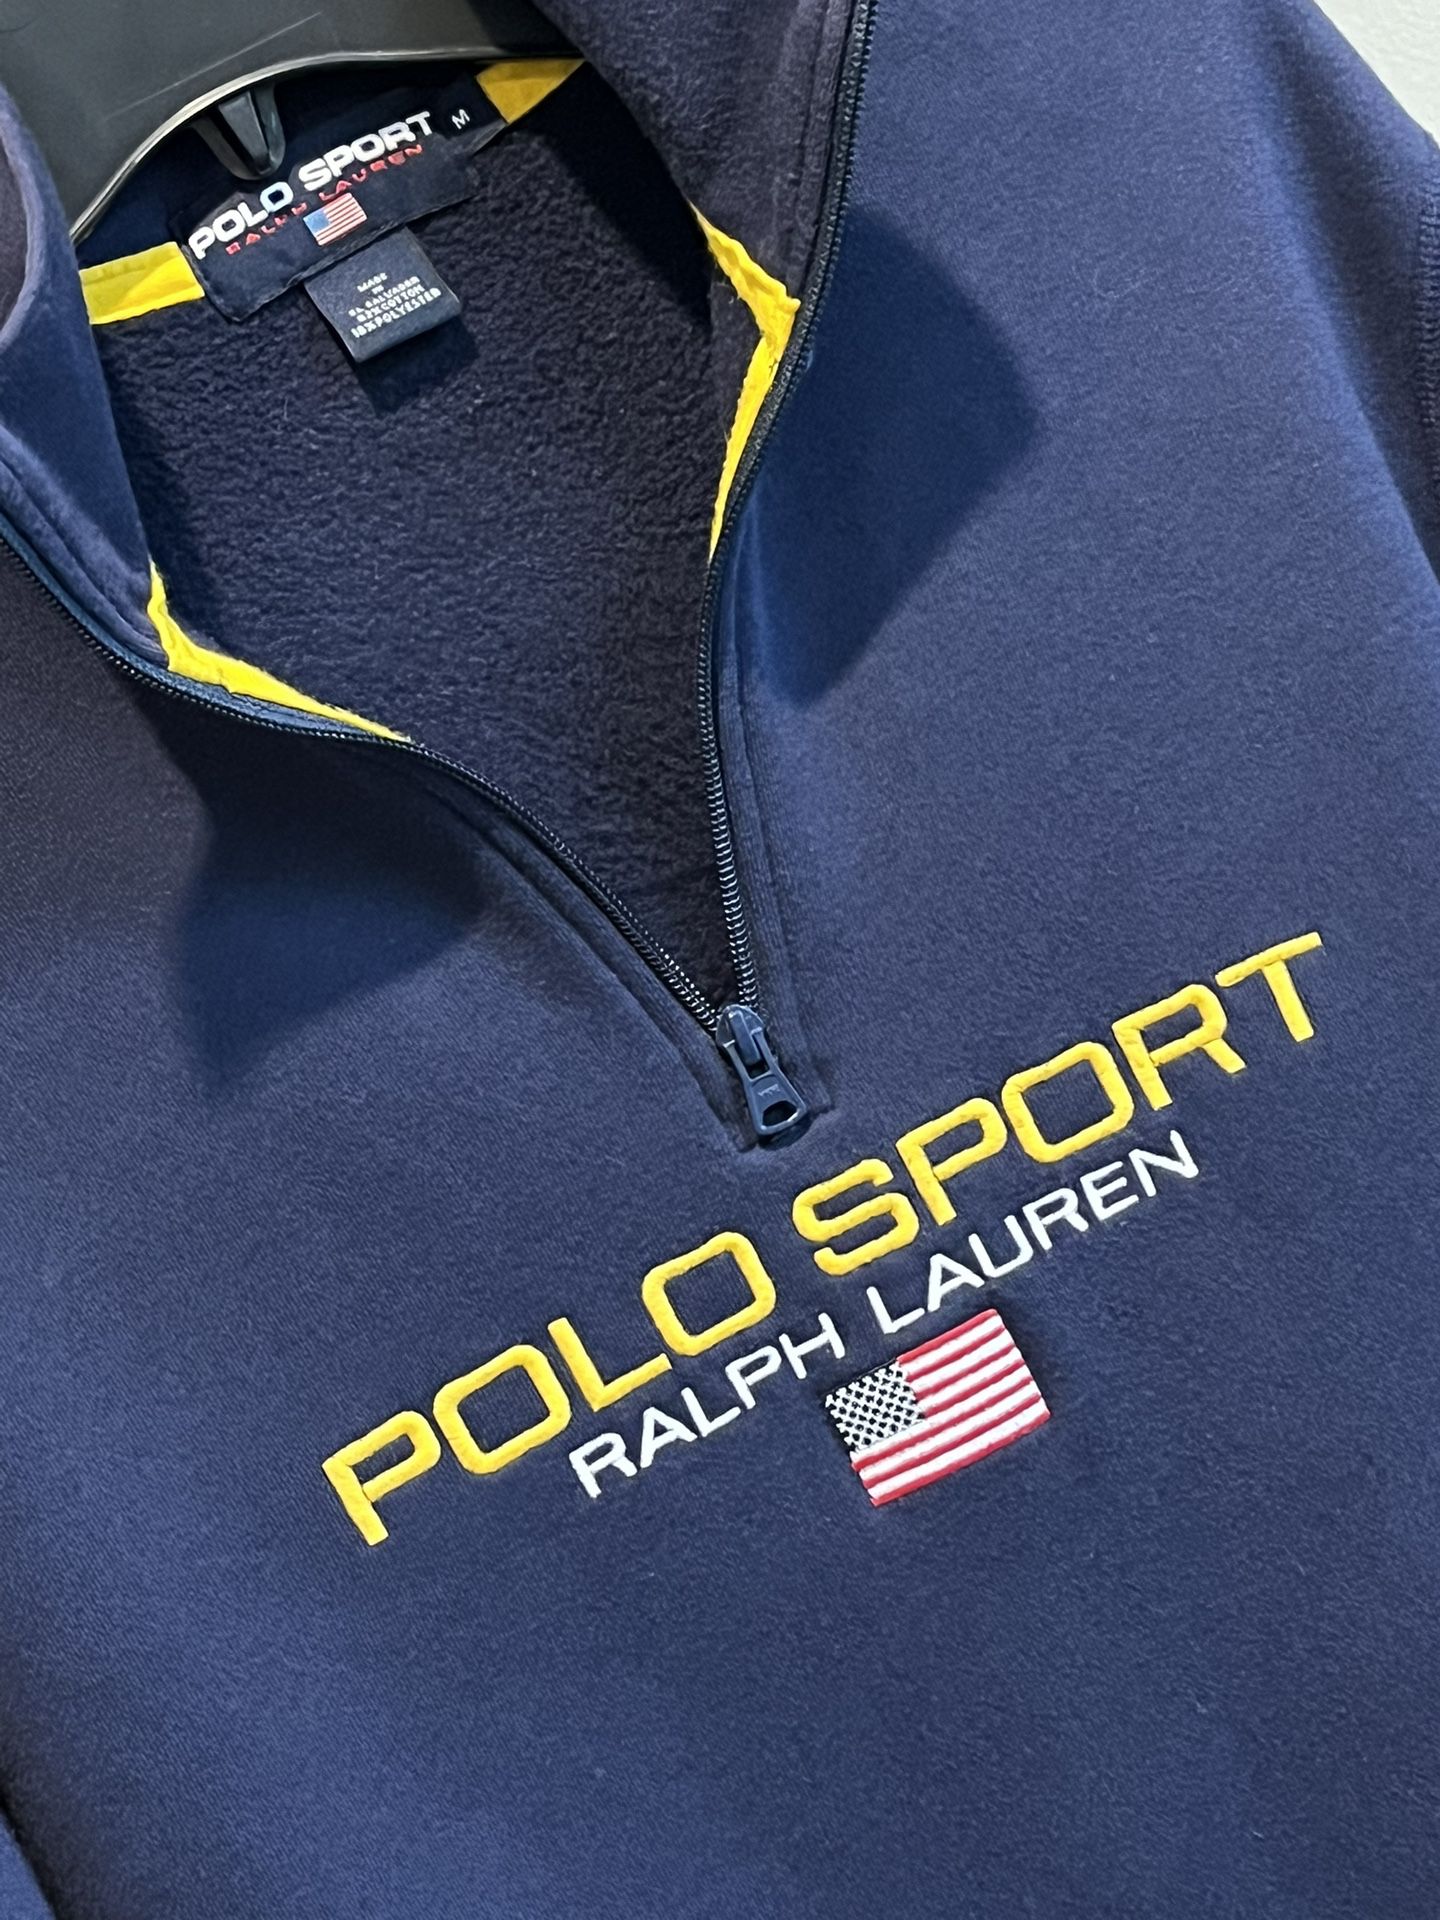 NEW - POLO Sport By Ralph Lauren Men’s 3/4 Zip Navy Sweatshirt Size Medium / PENDING OFFER